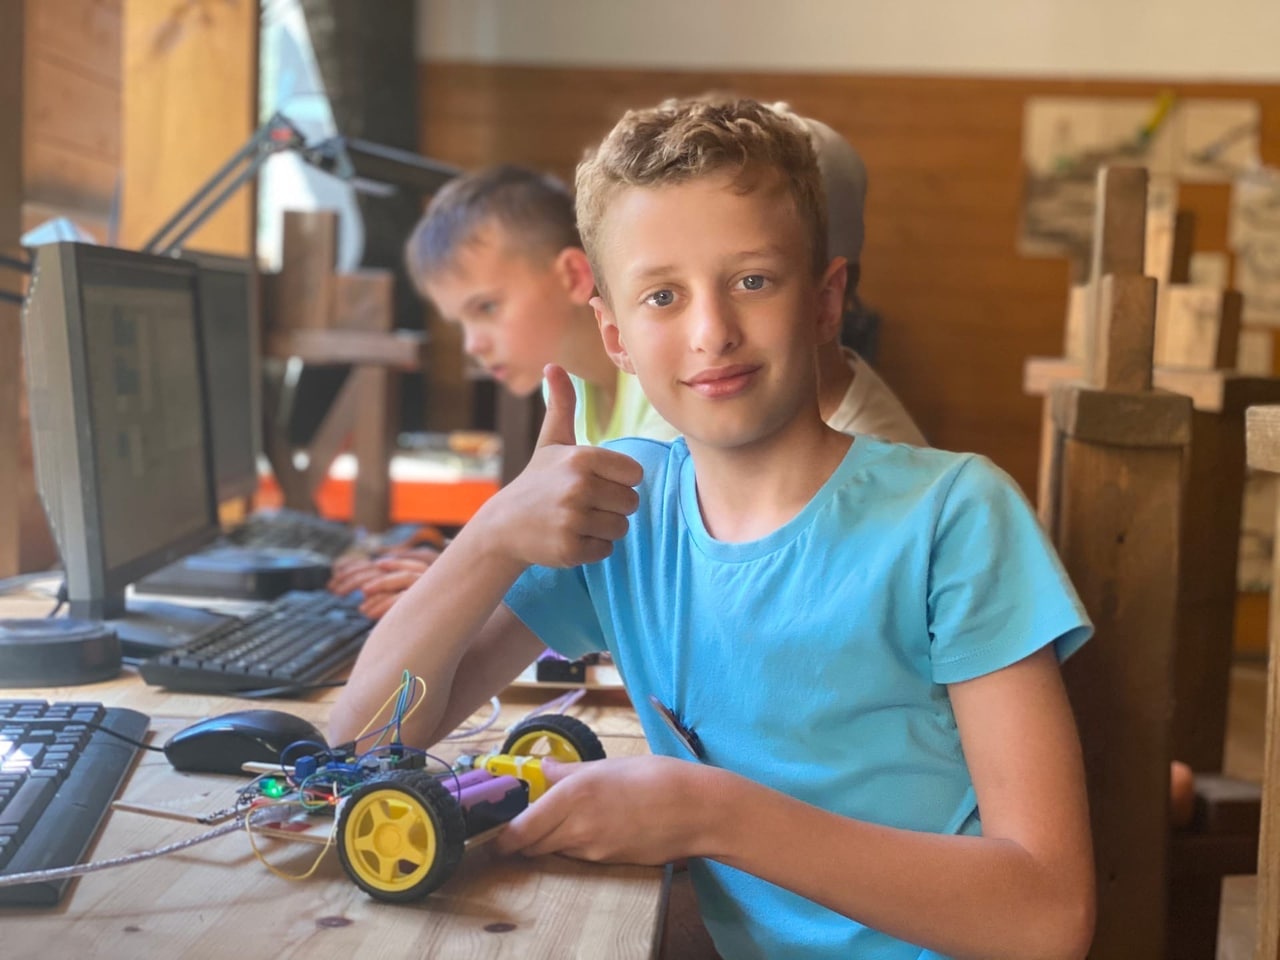 «AzimovCamp» – путевки в летний детский лагерь с занятиями программированием 2023, Ленинградская область, Выборгский район – 1.